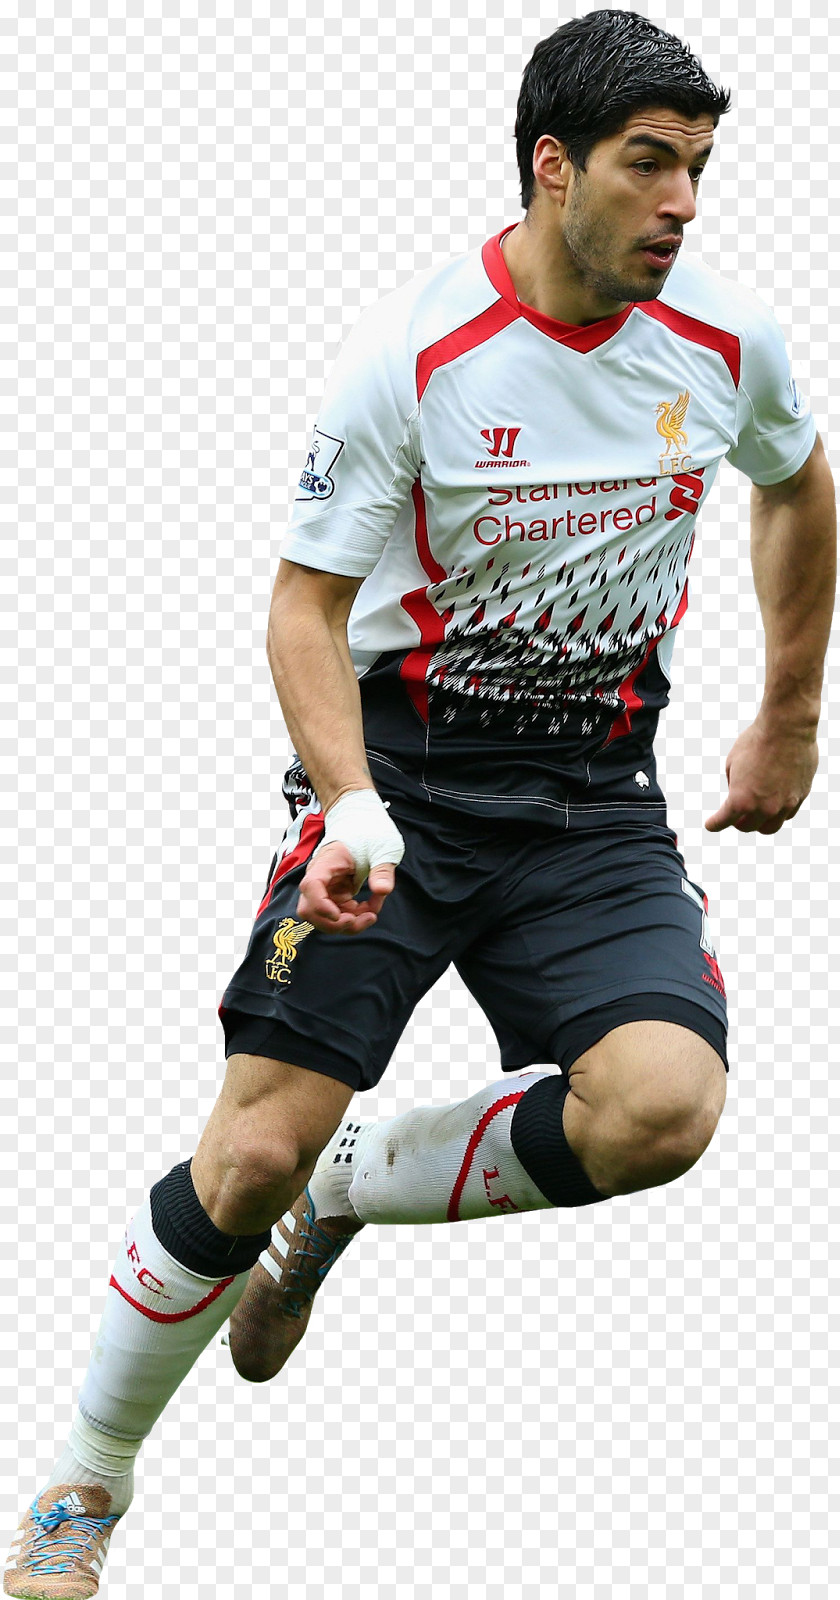 Luiz Suarez Luis Suárez Liverpool F.C. Jersey AFC Ajax Football Player PNG